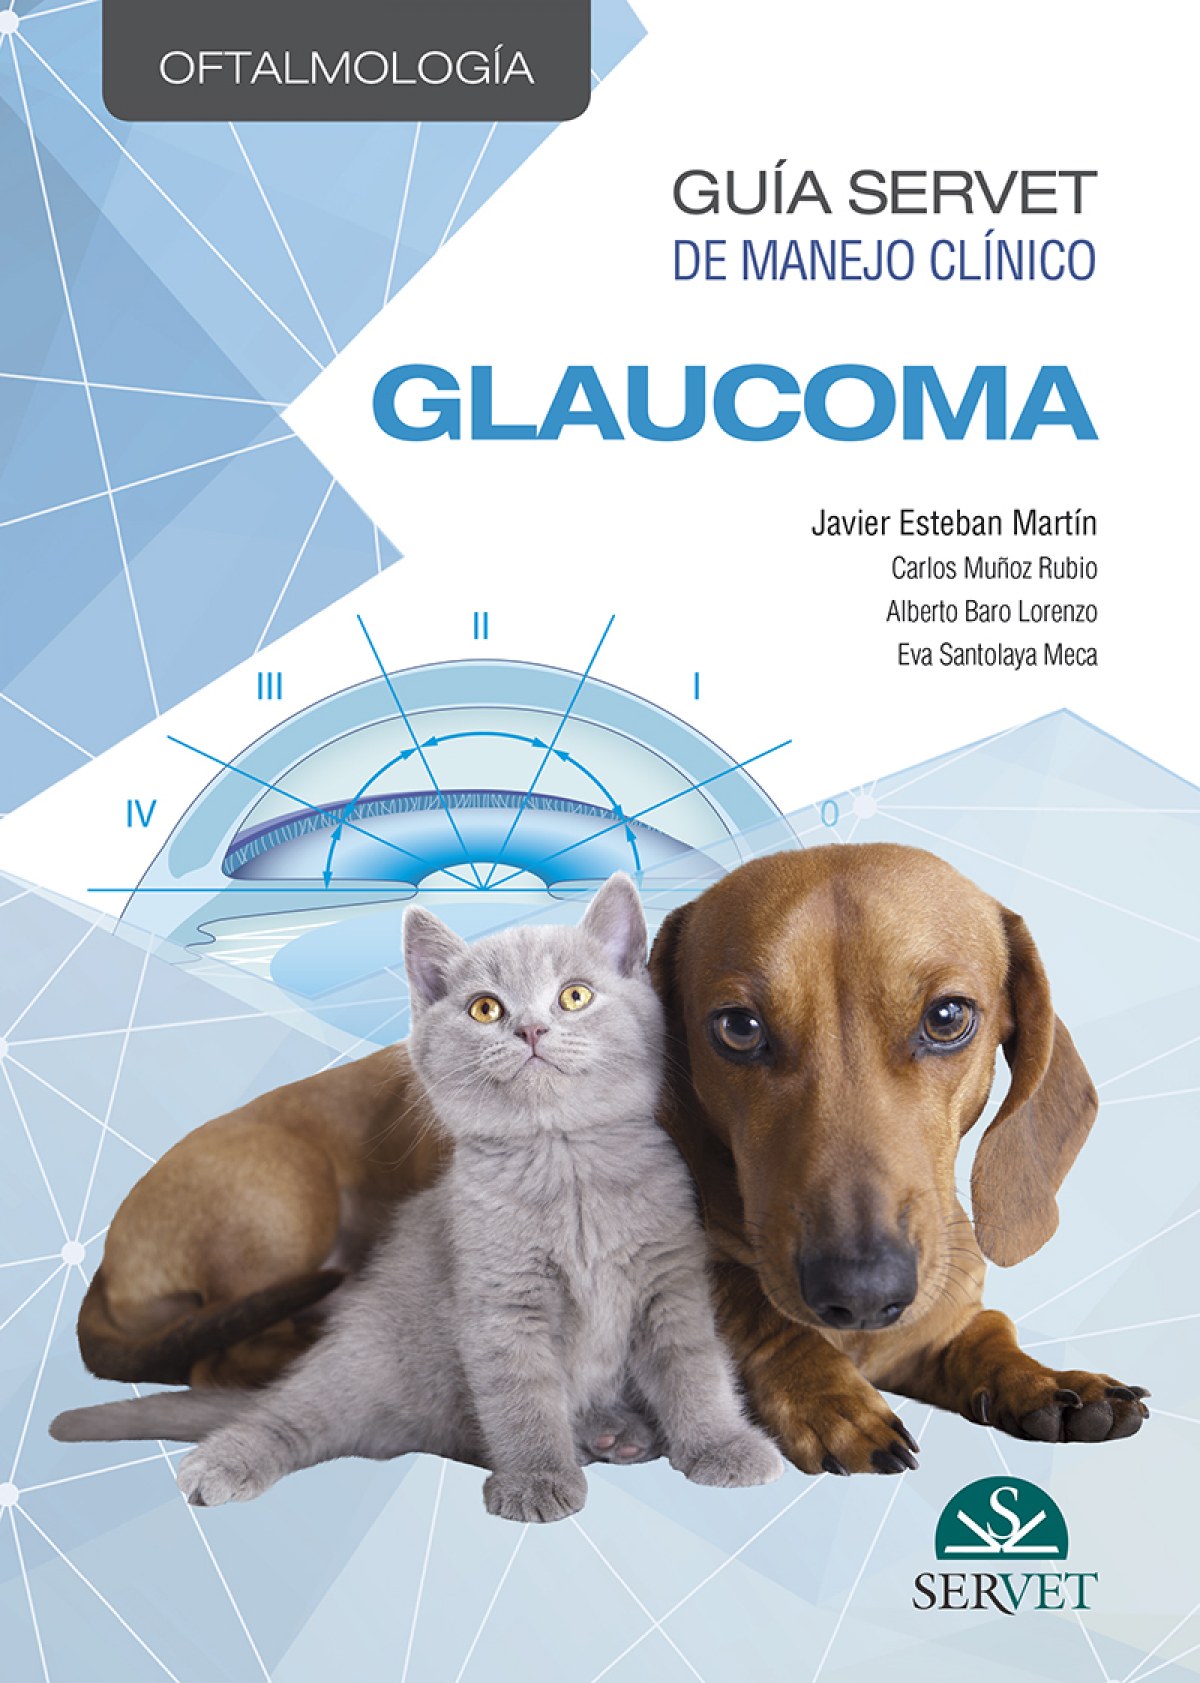 Guía Servet de manejo clínico: Oftalmología. Glaucoma - Esteban Martín, Javier